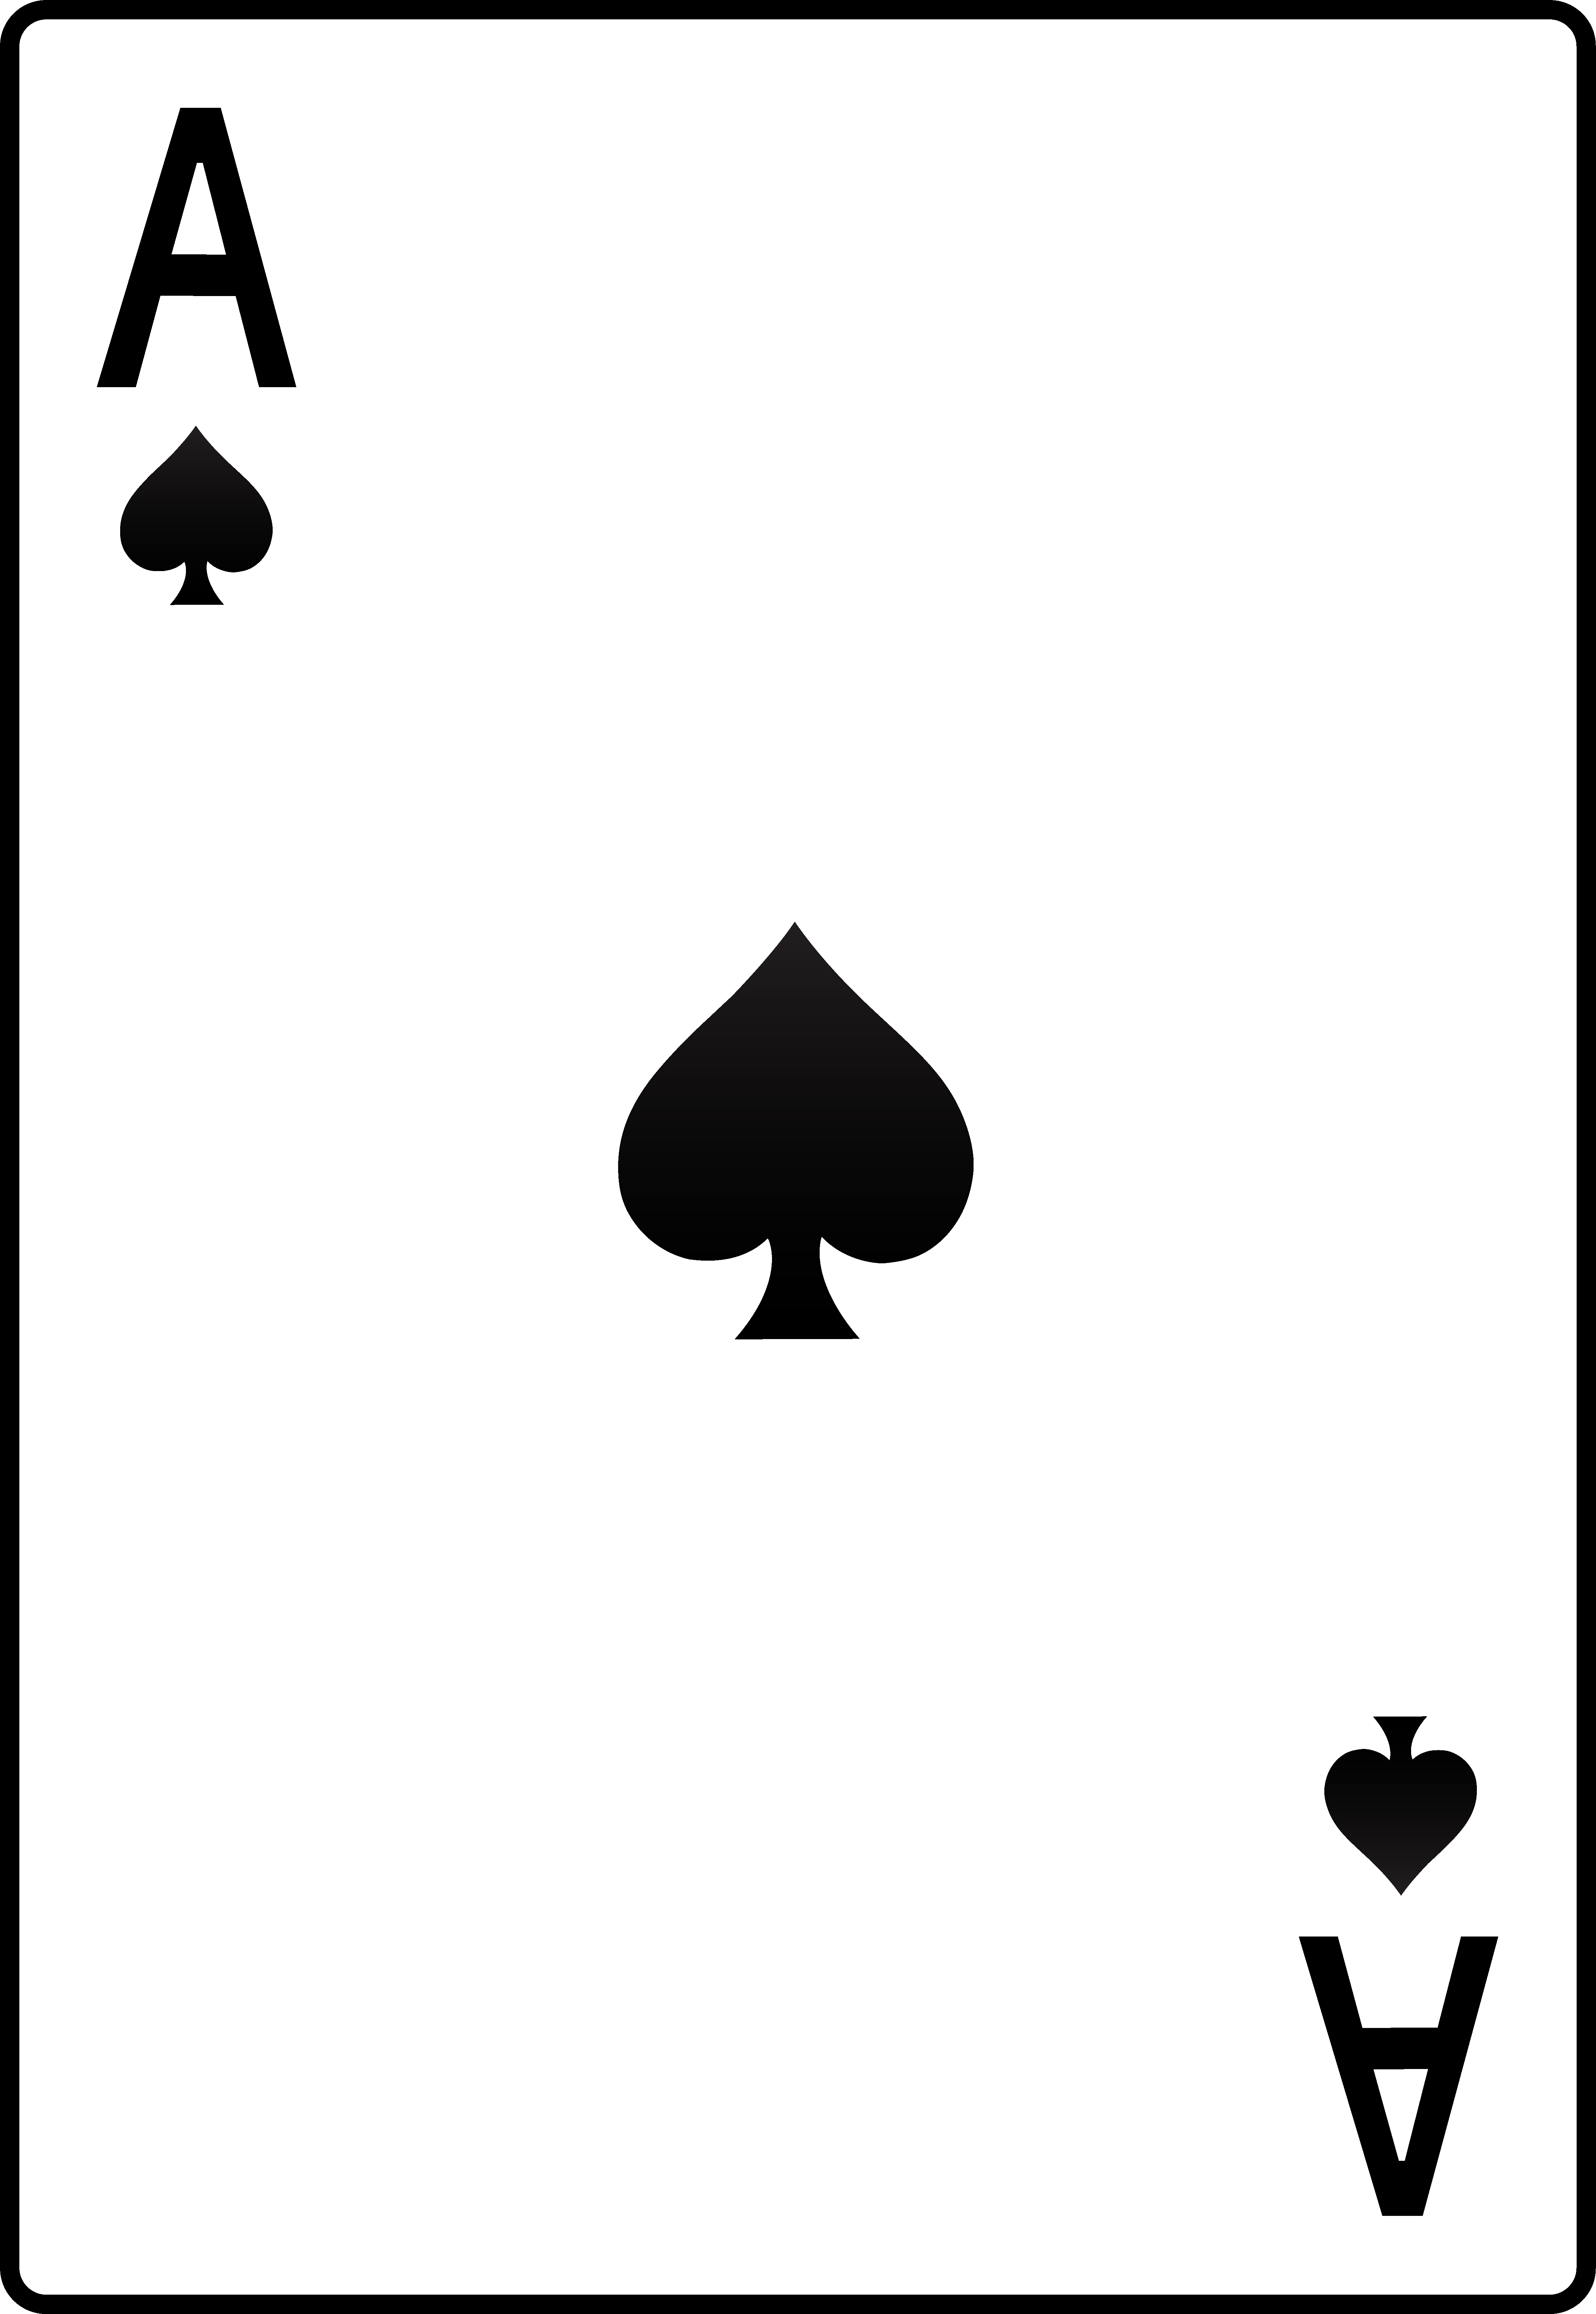 Ace card clipart